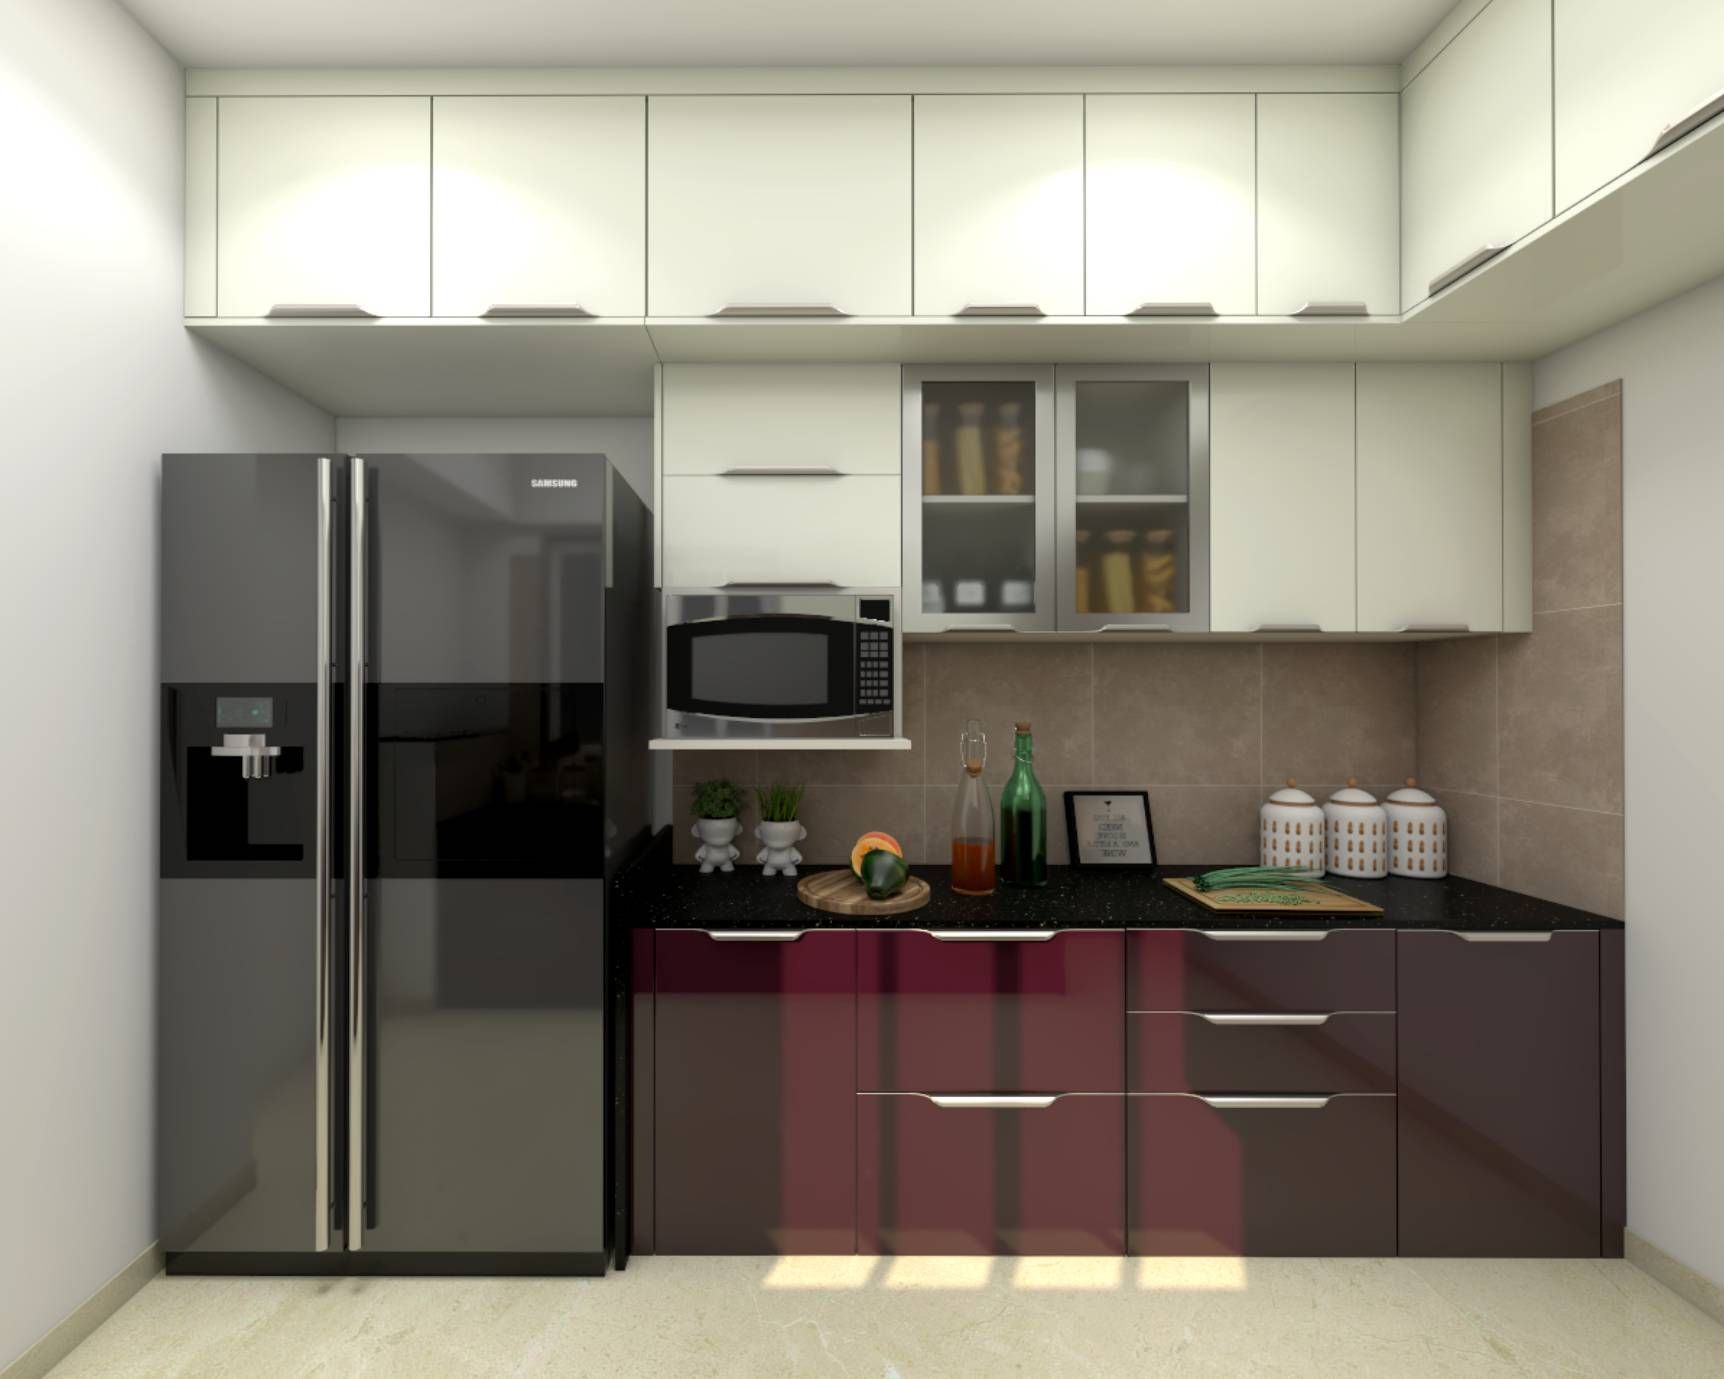 Modern Kitchen Design With Maroon Storage Cabinets